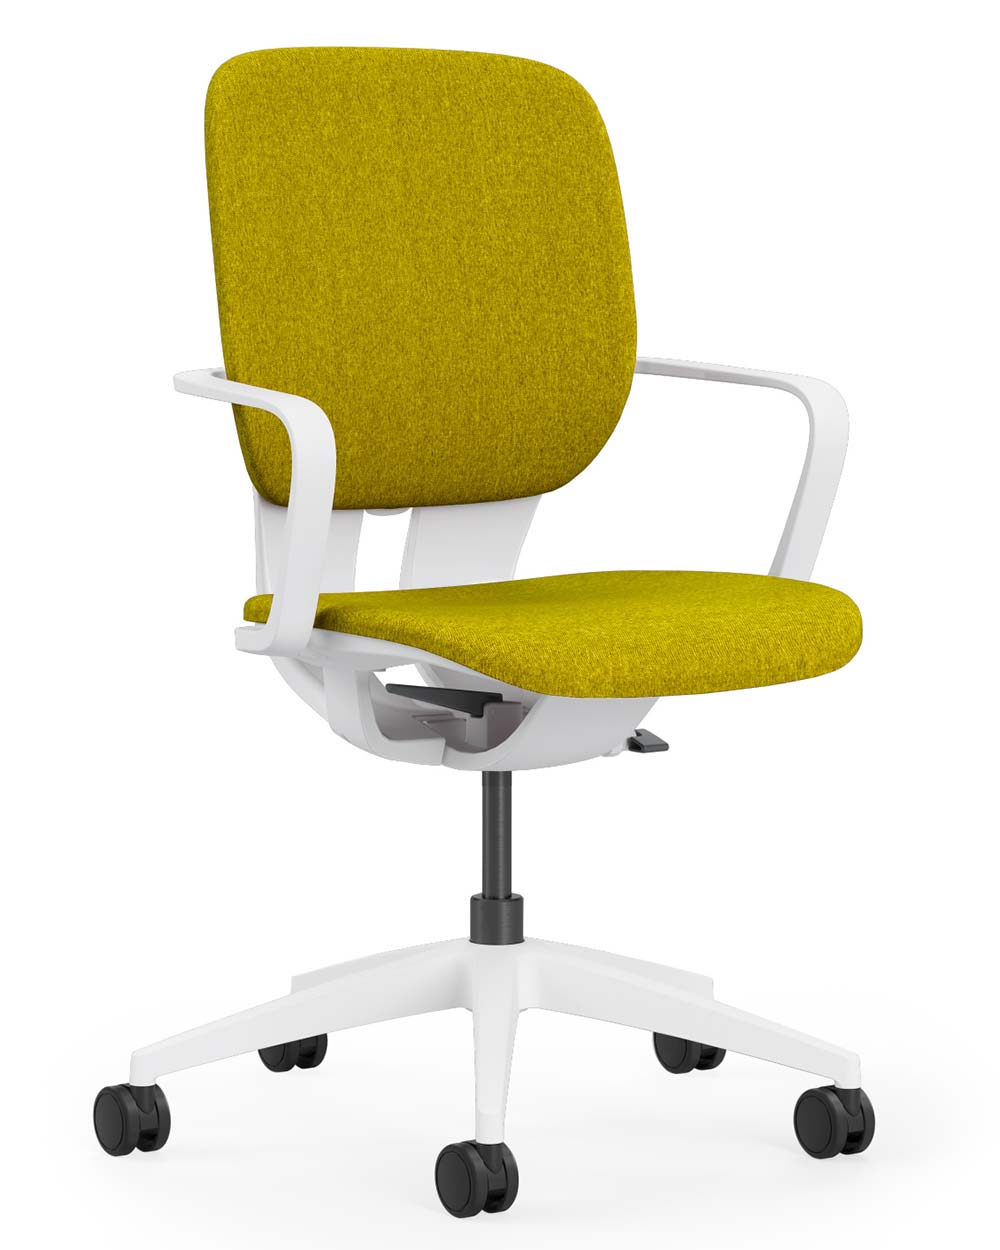 Klöber LIM (P990) Drehstuhl, Sitz und Rücken gepolstert, vorne, gelb